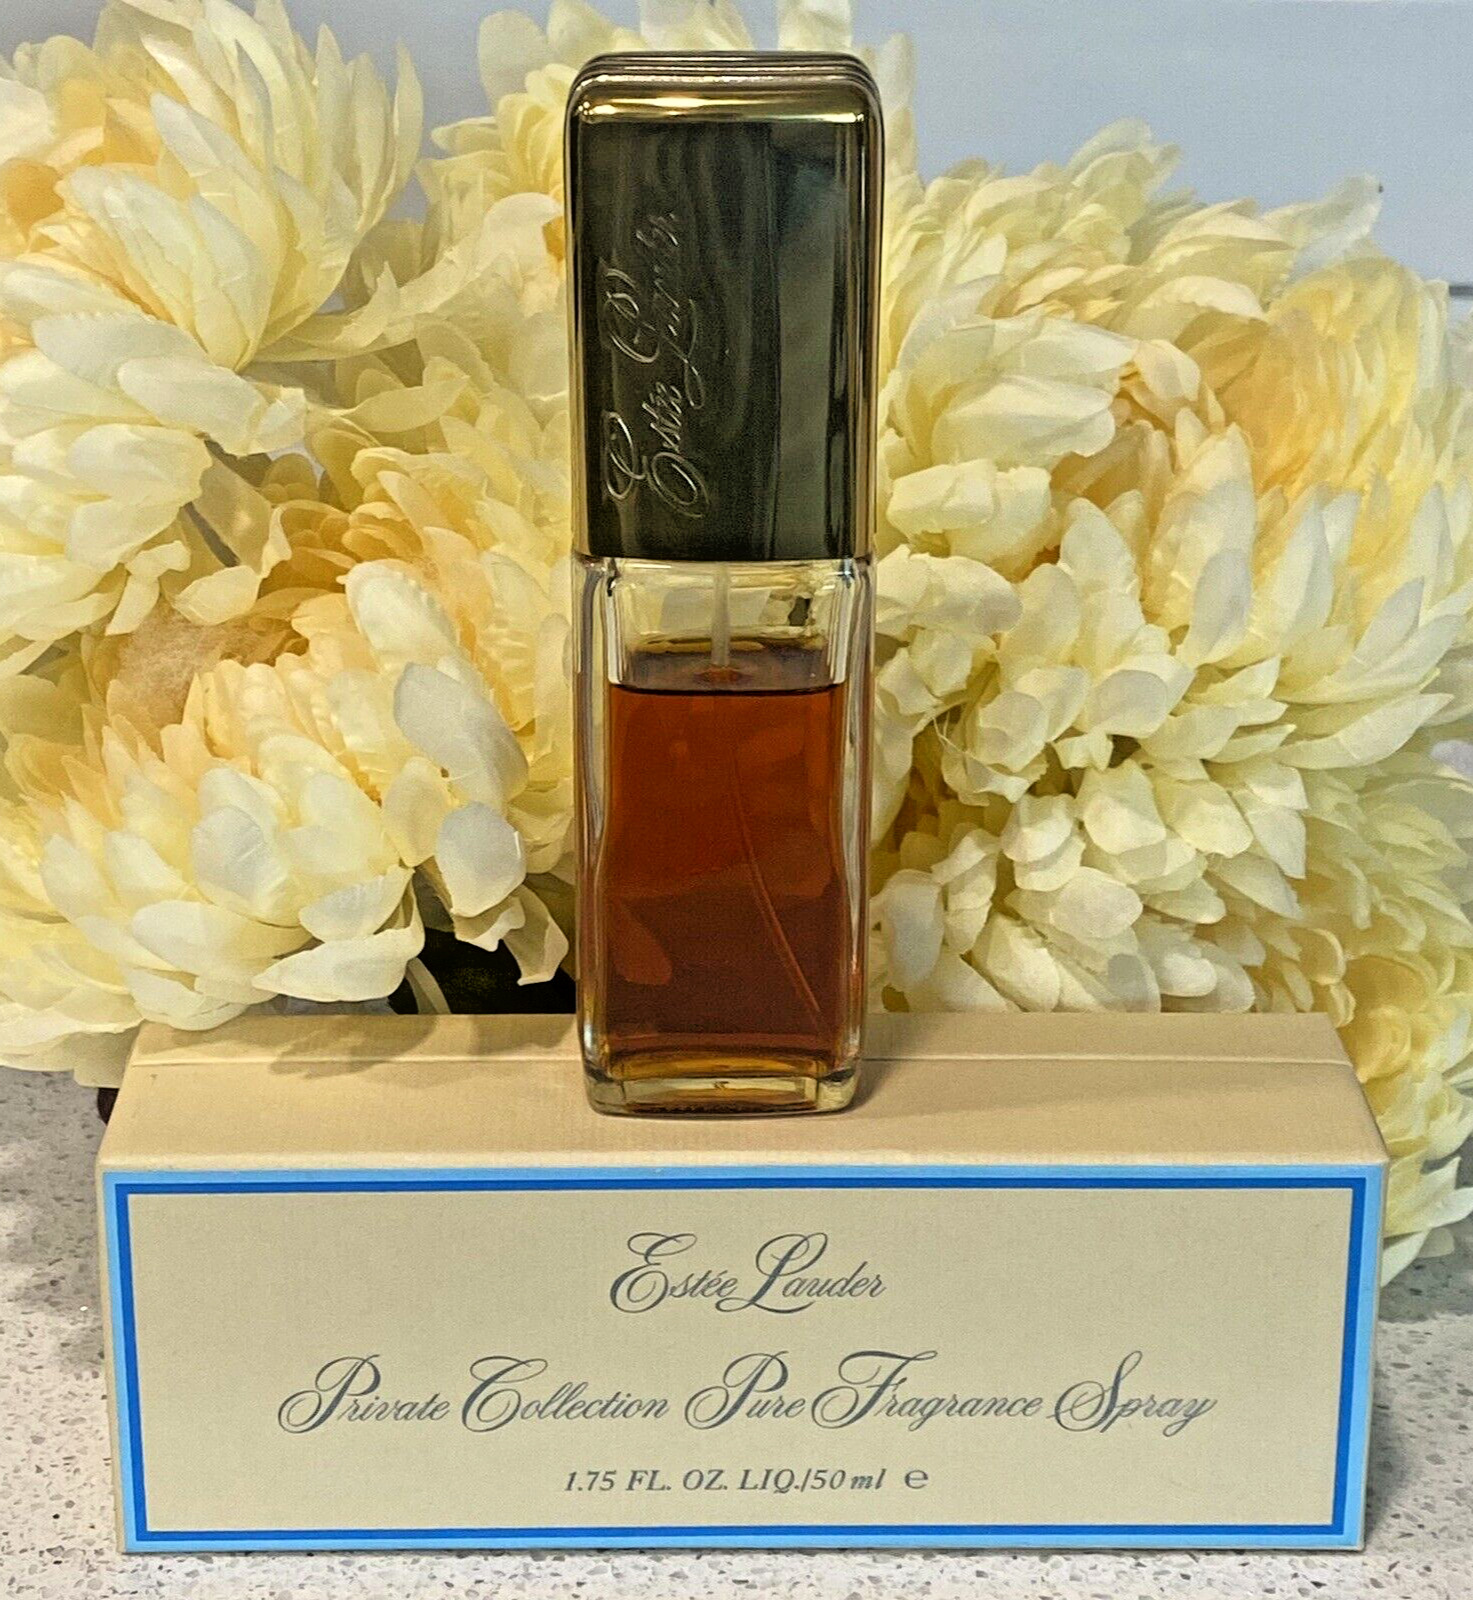 Estee Lauder Private Collection Pure Fragrance Spray (1.75 oz)  75% Full w/Box